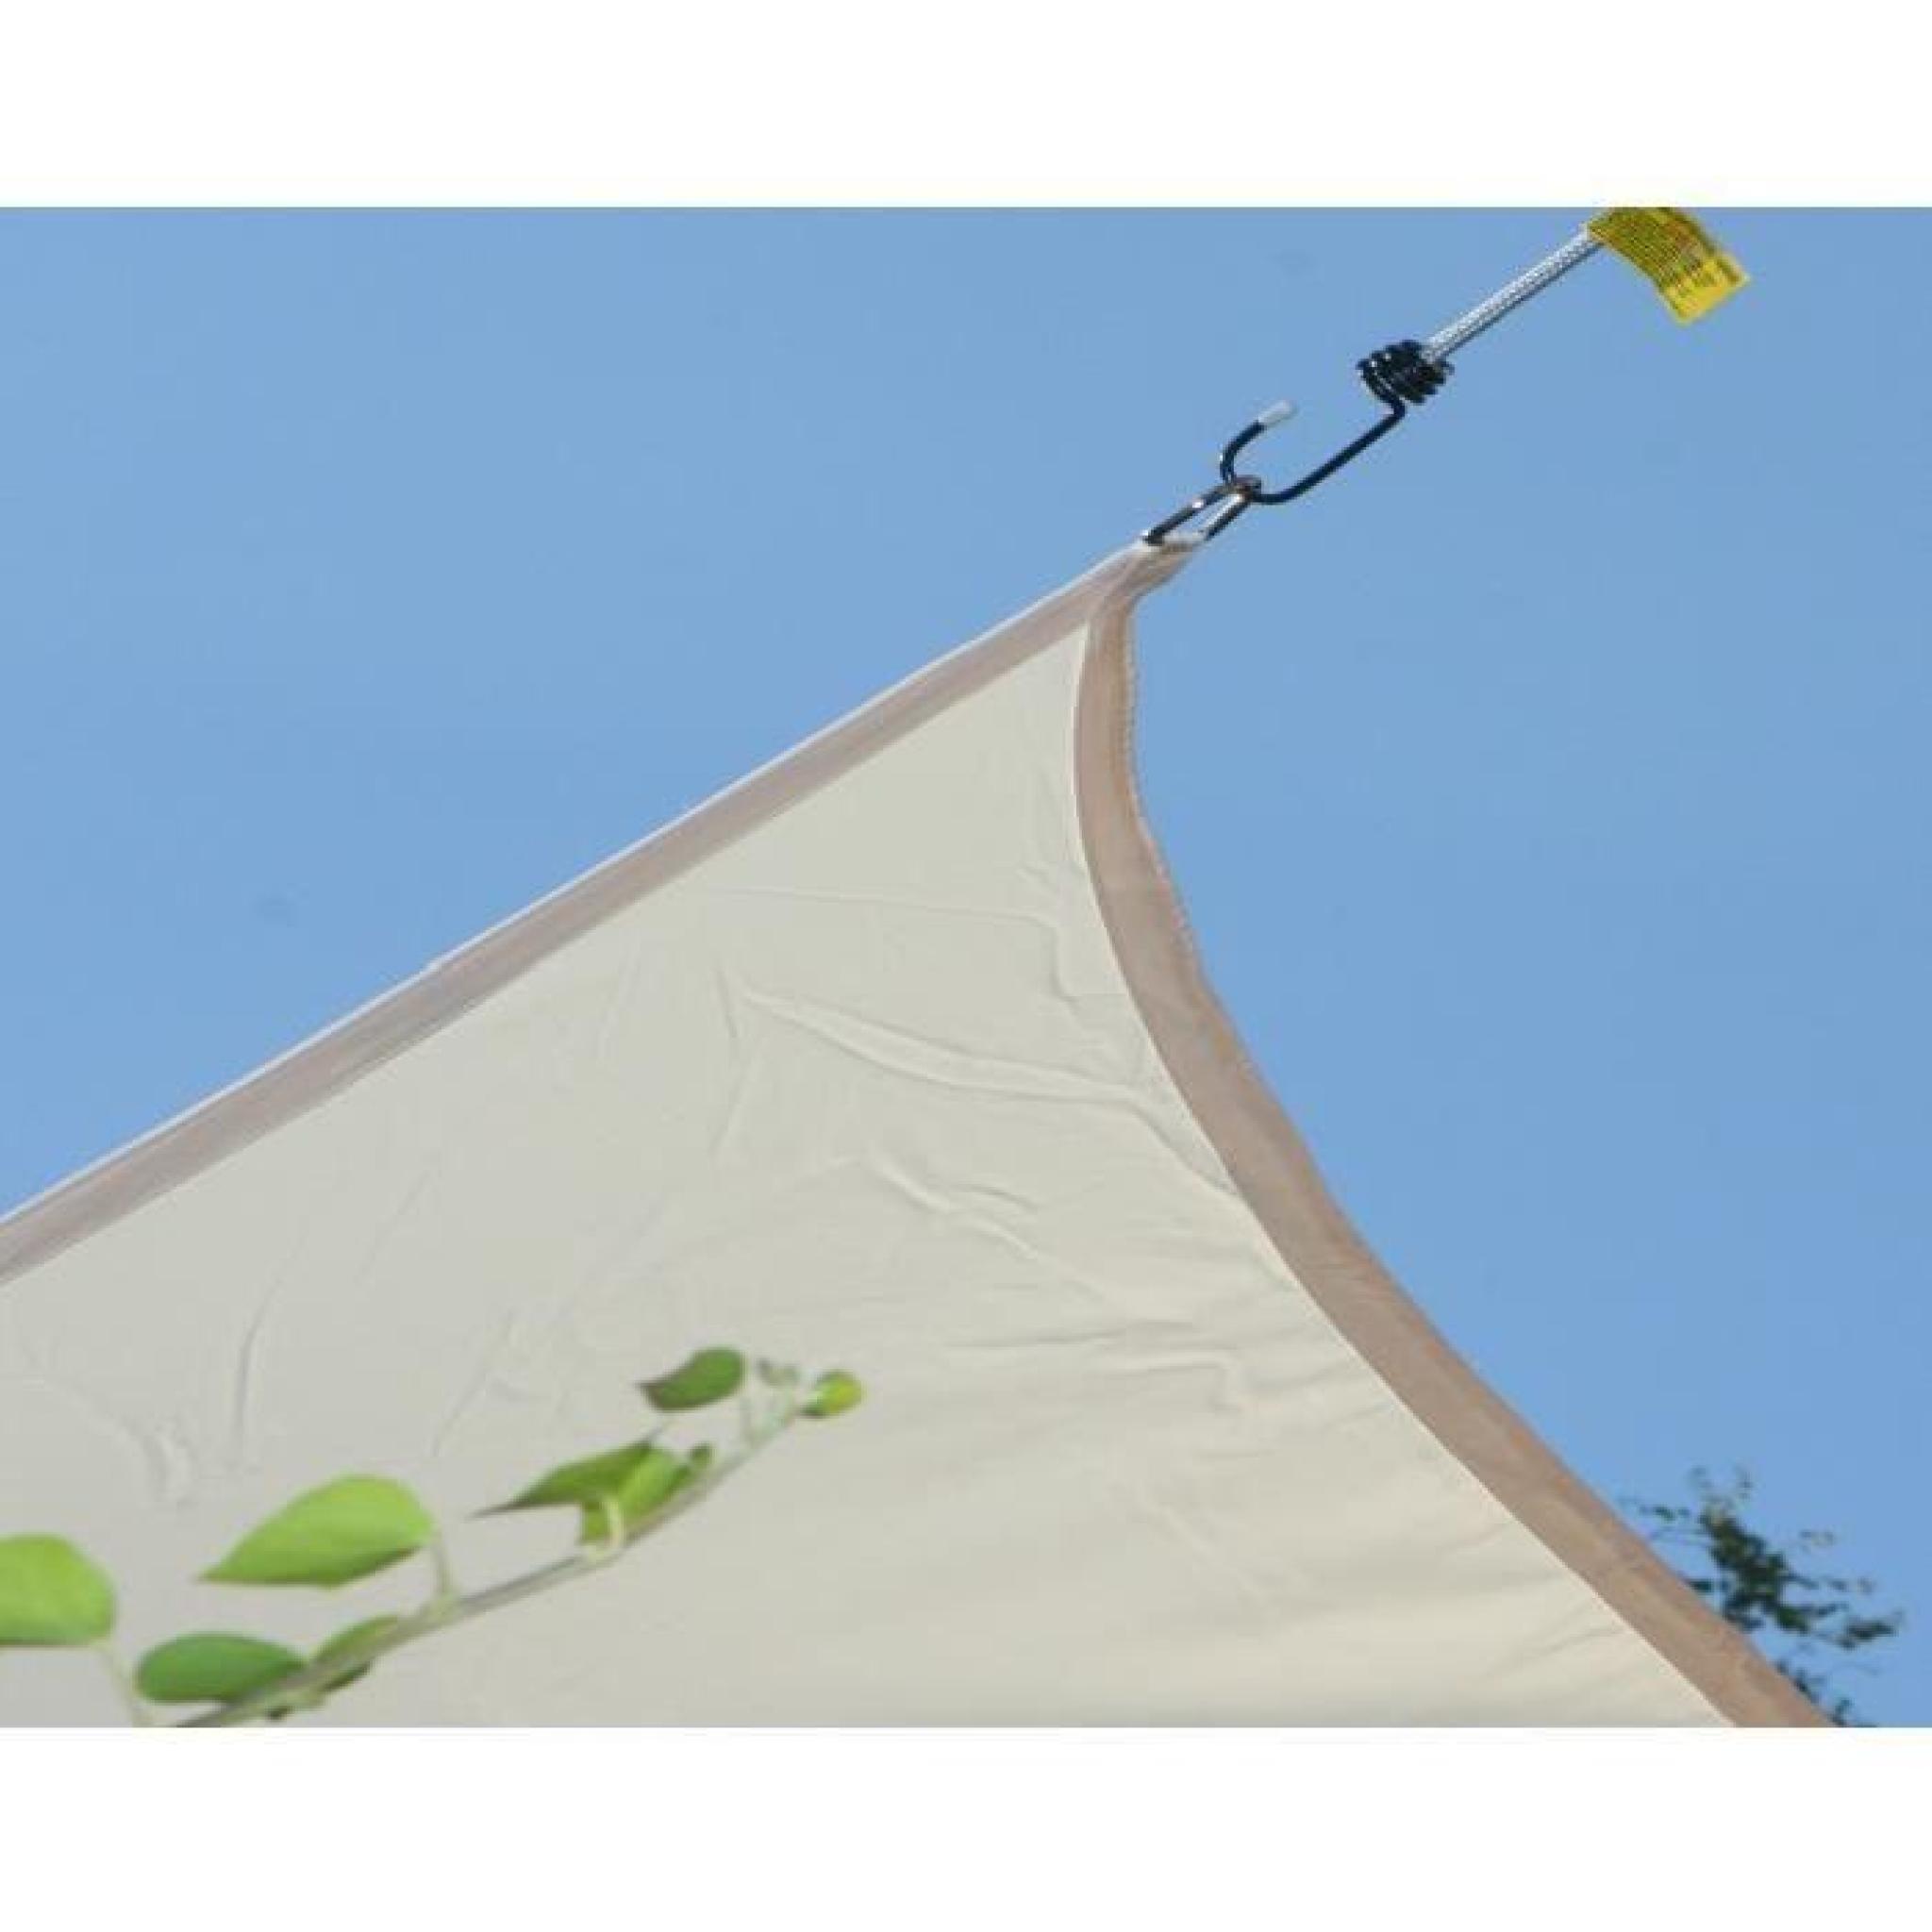 Voile d'ombrage Carrée Vert Anis en Polyester 200g-m² anti-UV, 360 x 360 cm avec kit de fixation pas cher